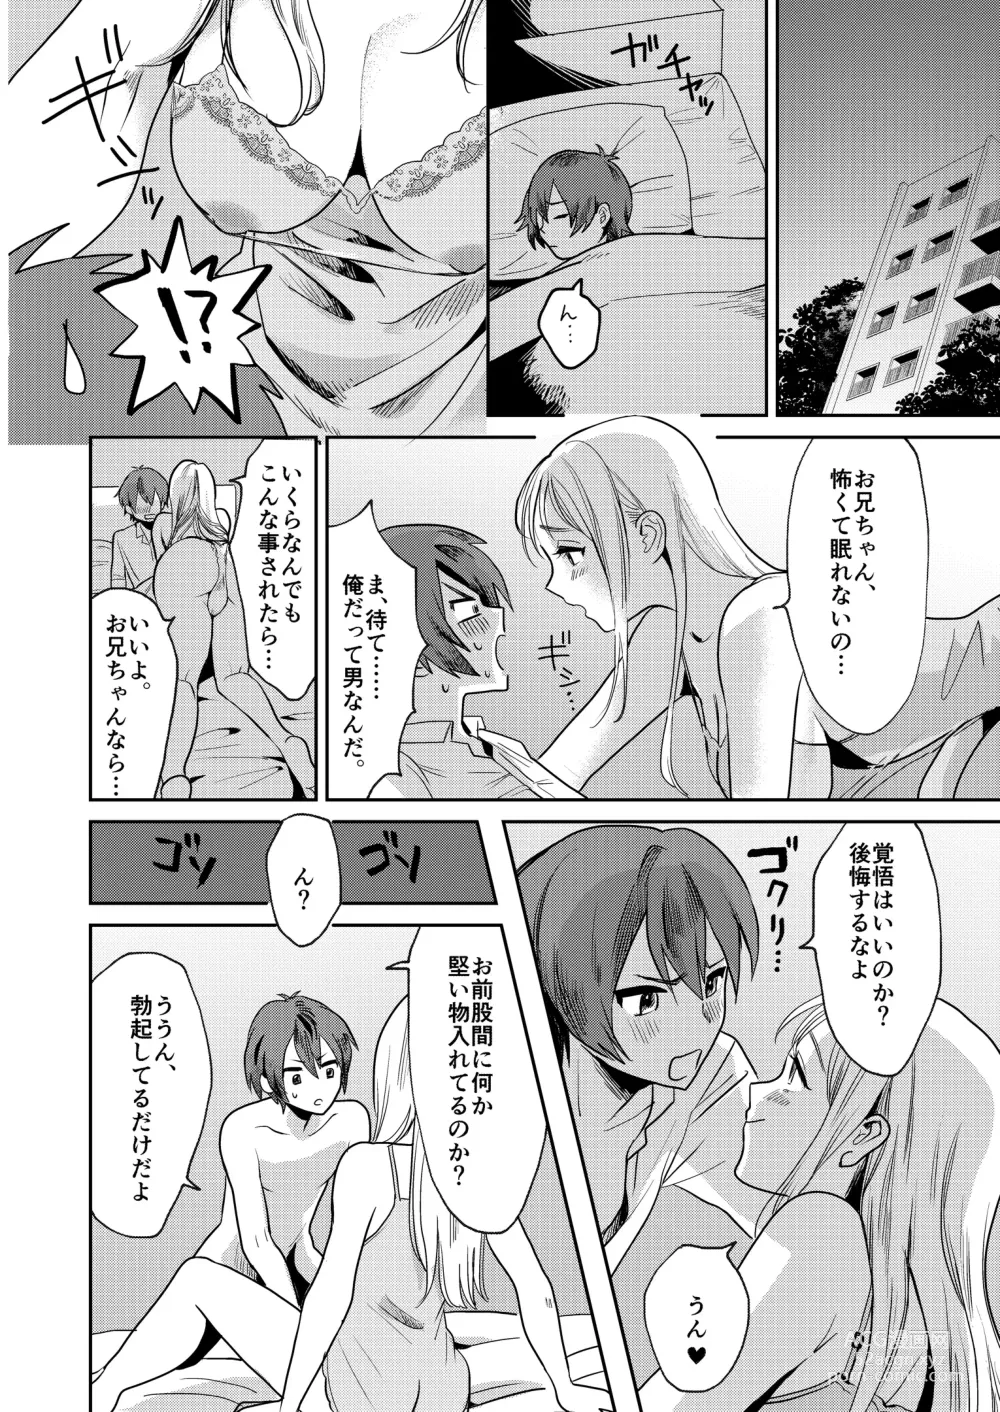 Page 6 of doujinshi Jyoseika Oniichan wo Kanojo ni Shichae!